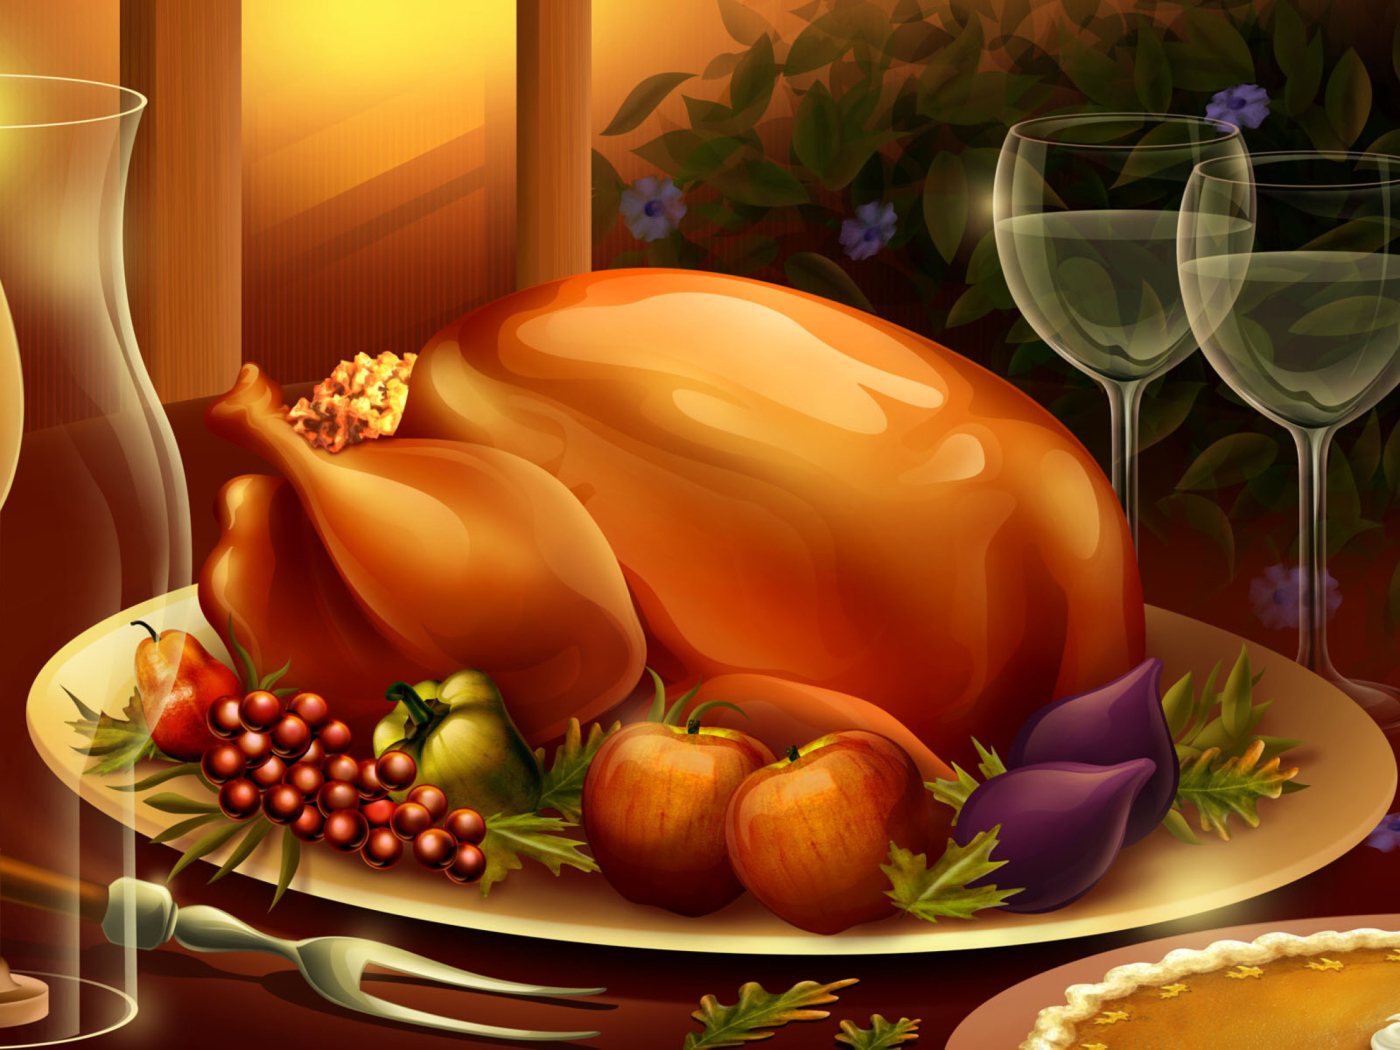 Thanksgiving Feast wallpaper 1400x1050